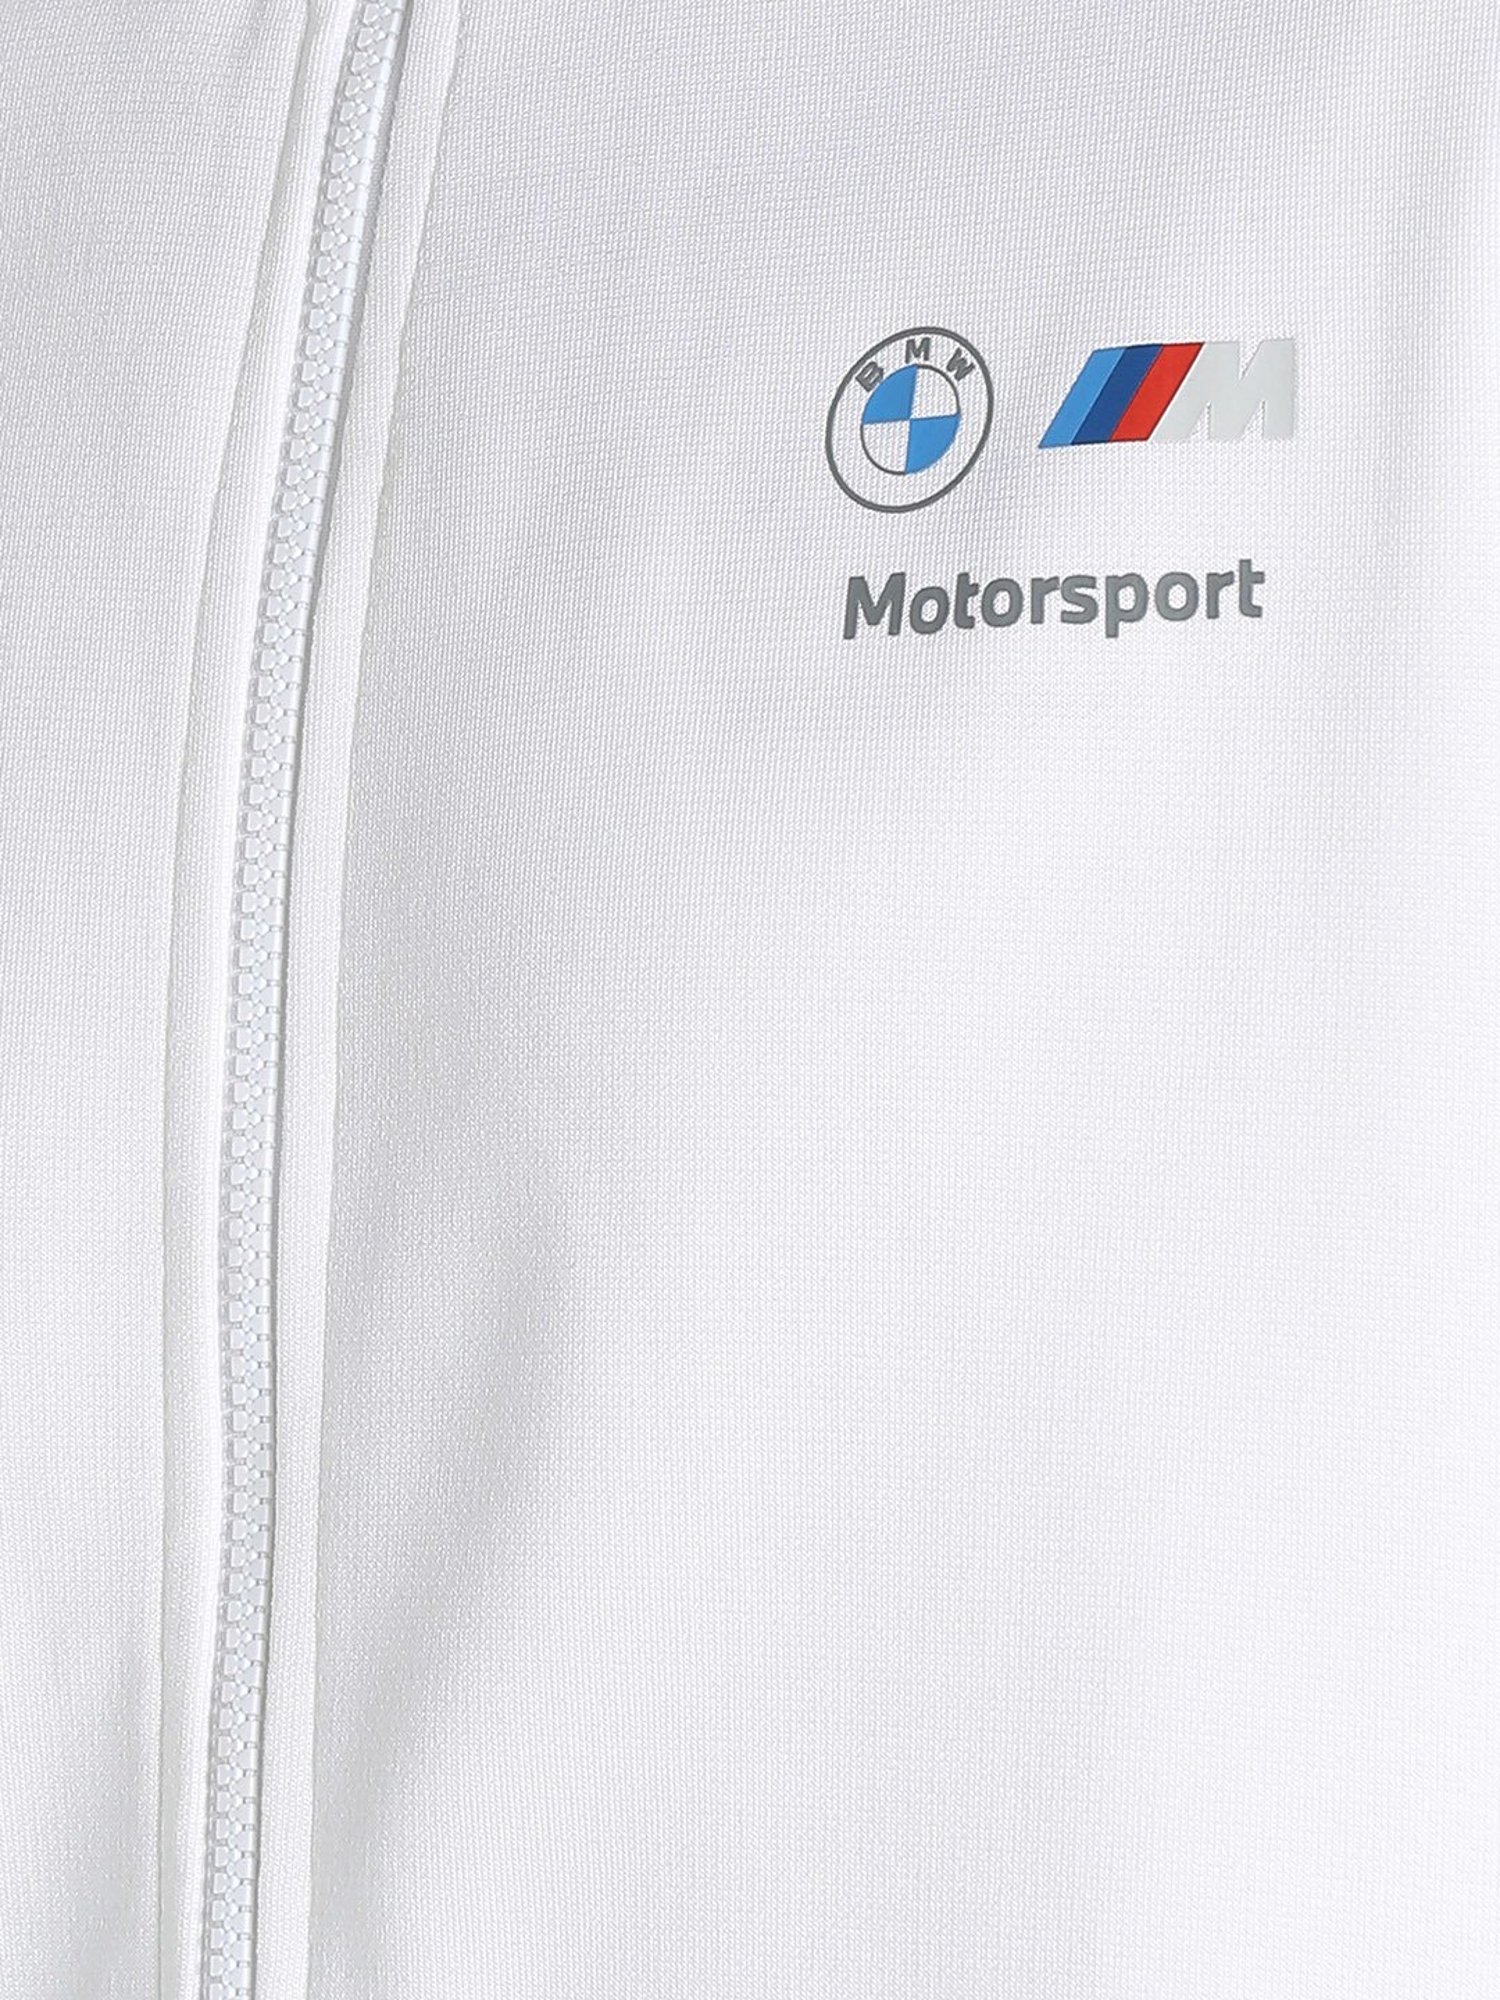 BMW jacket M Motorsport by Puma White 538119-01 - men